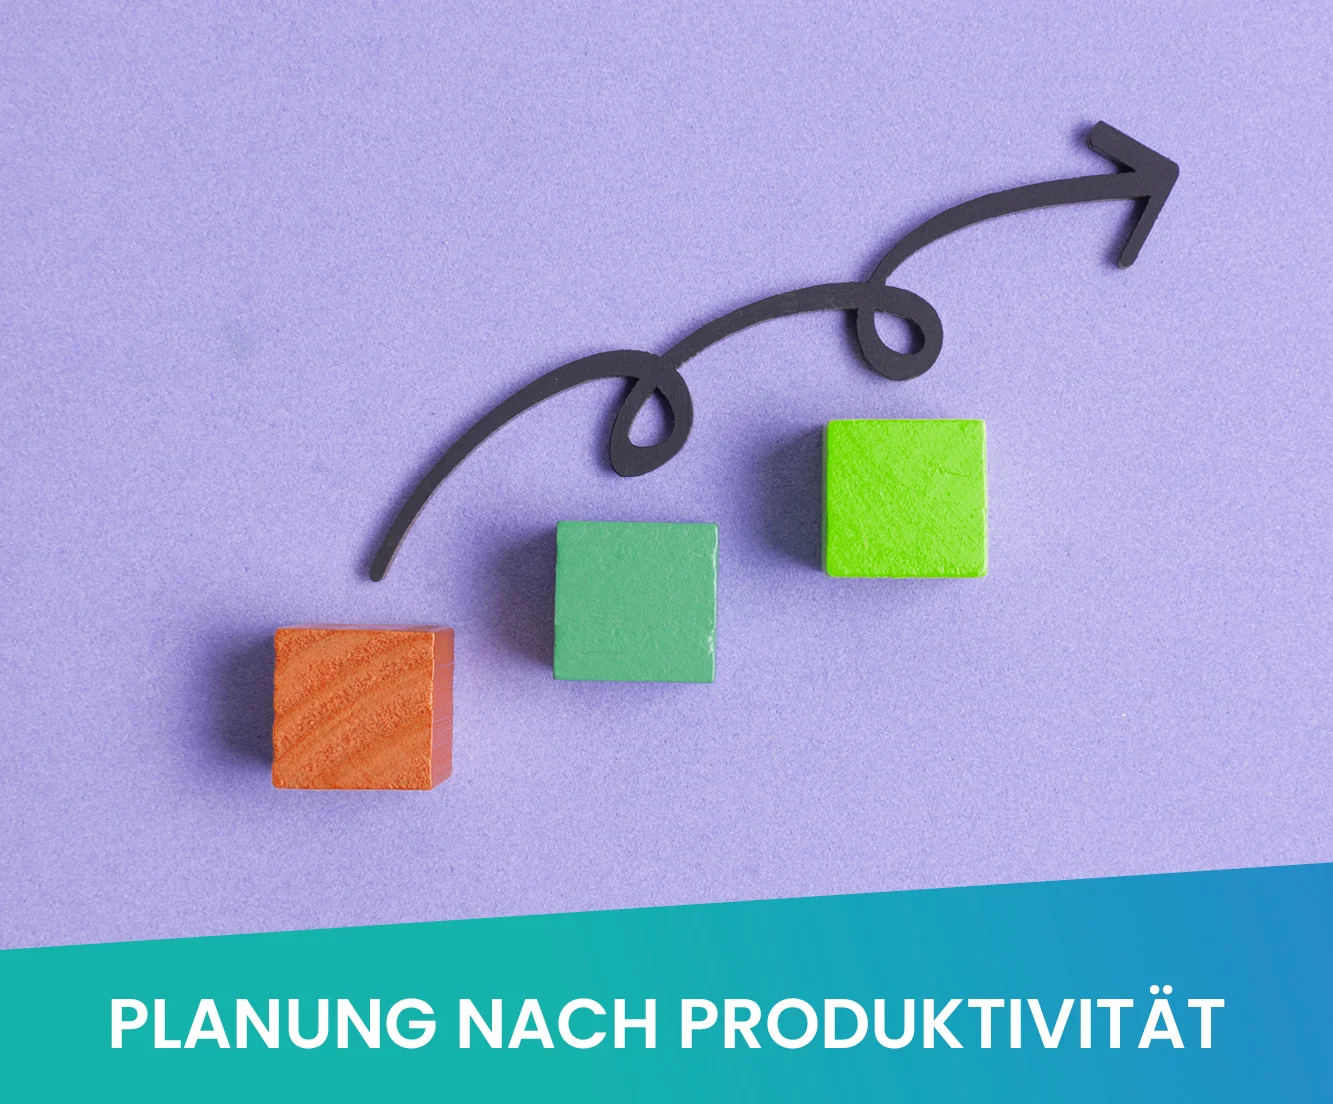 Mit der richtigen Dienstplanung erhöhen Sie die Produktivität ihres Betriebes